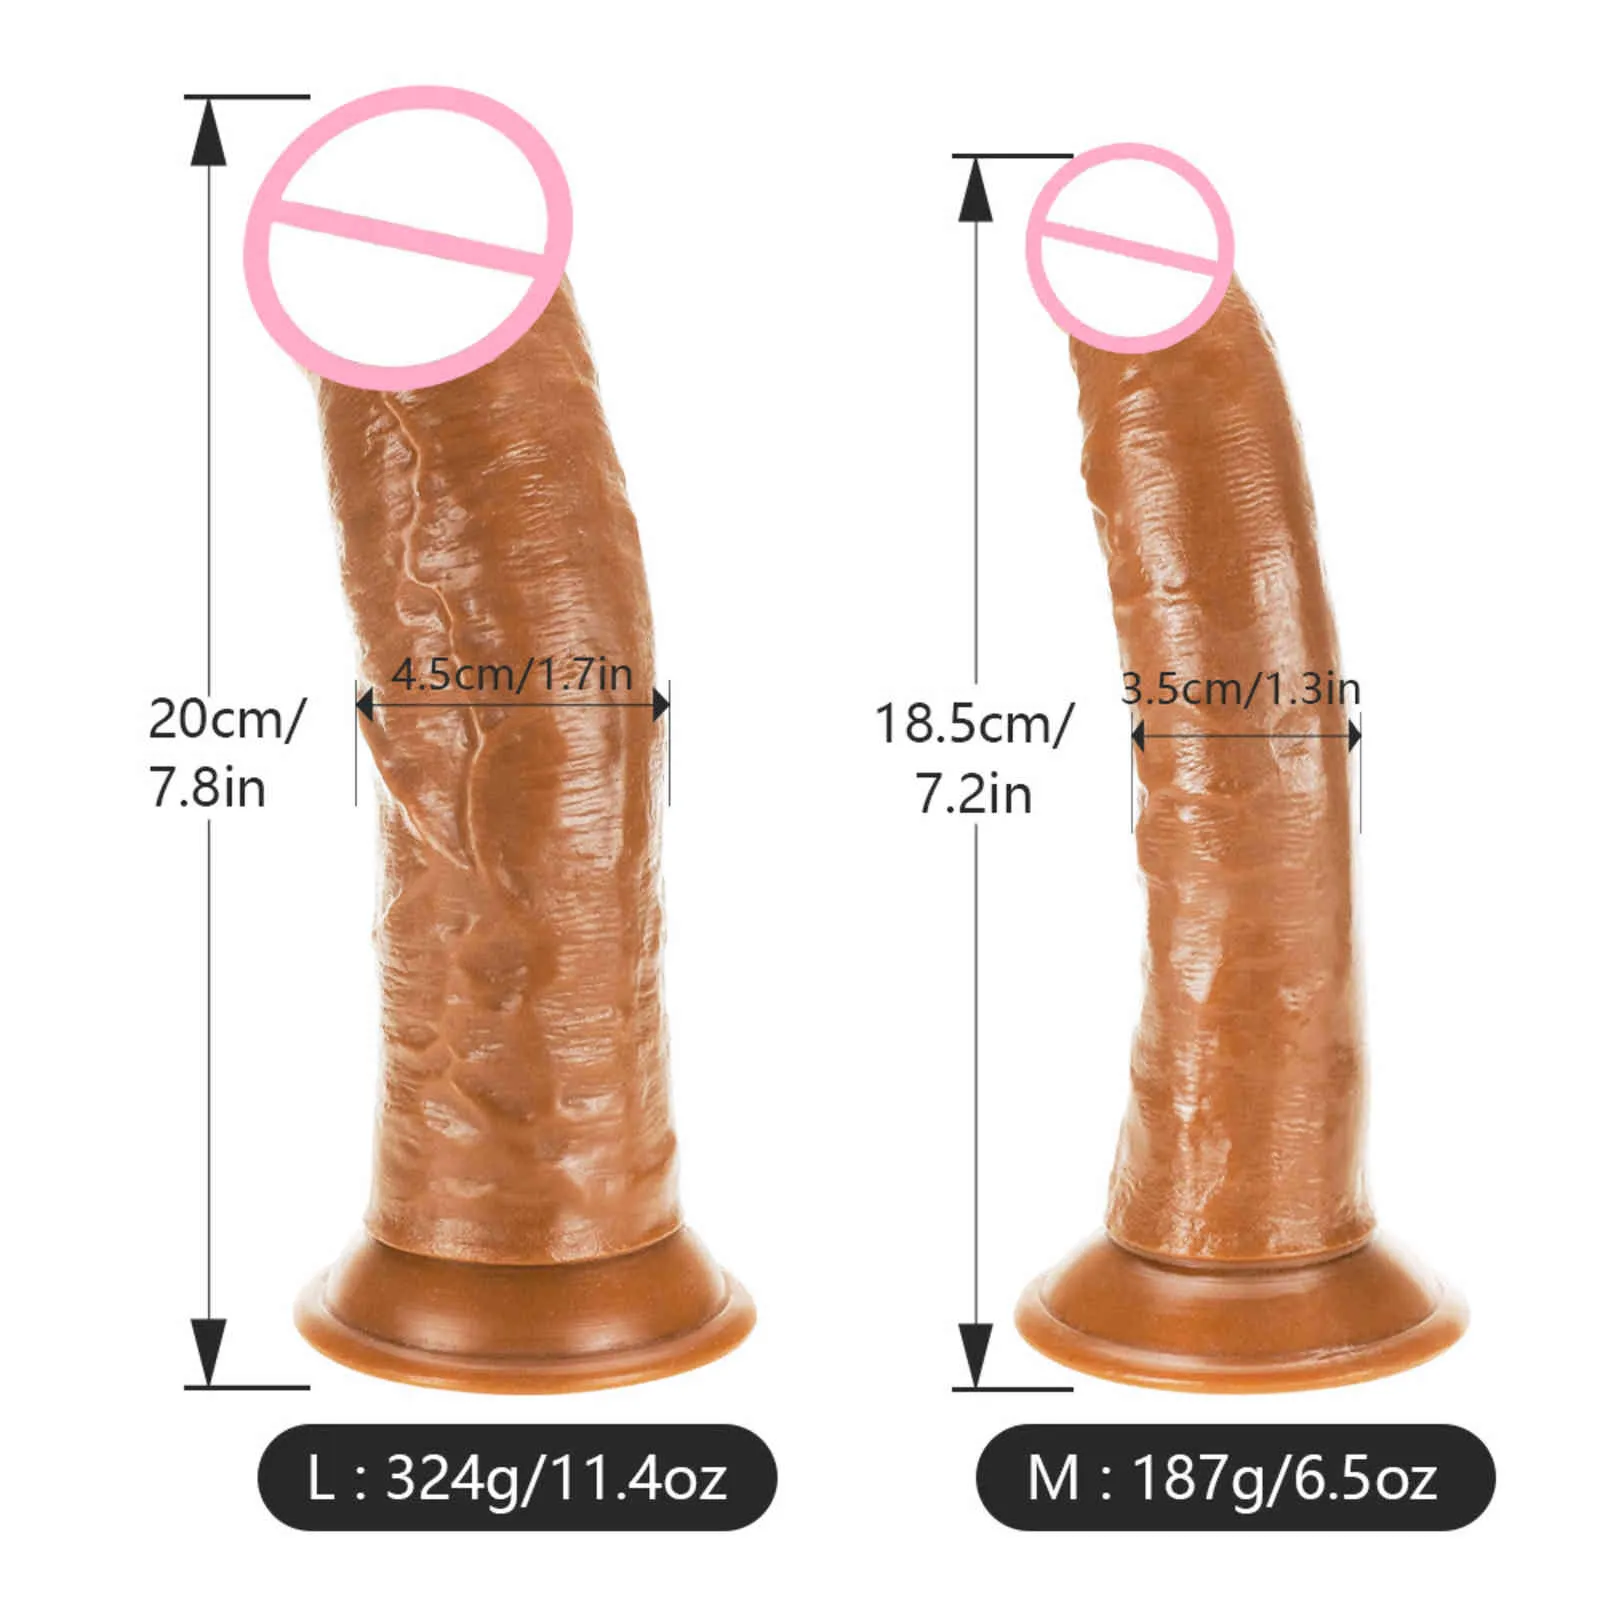 Strapon Realistic Dildo le donne Skin Senno enormi masturbatori del pene Dildos Dildos Belt Aspirazione Clitoride Stimolazione Sex Toys3884200